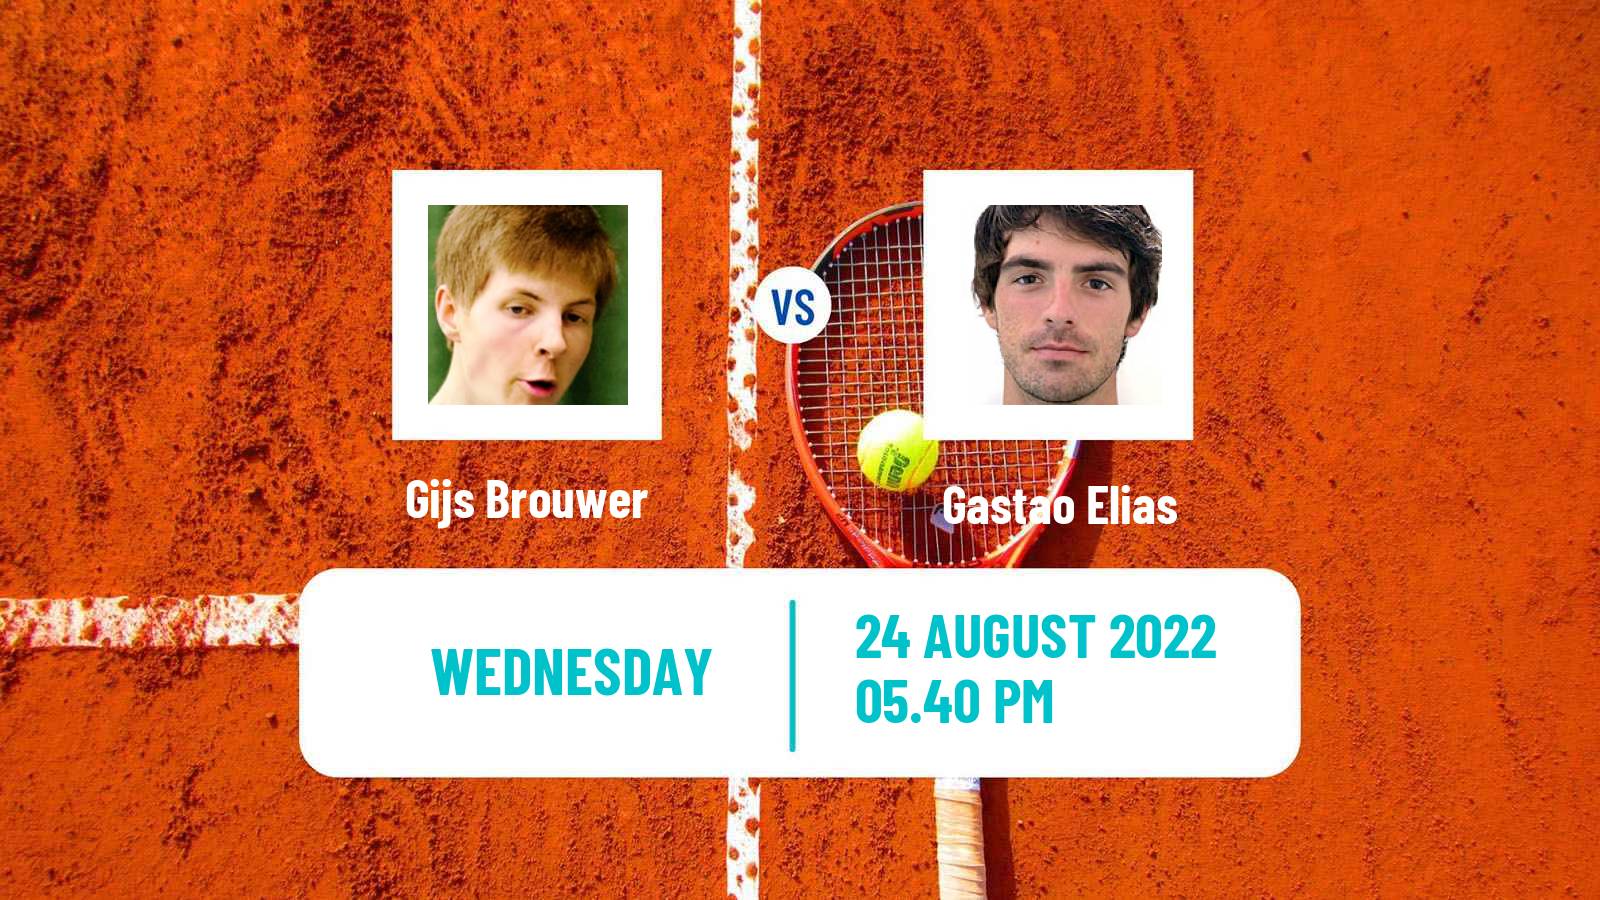 Tennis ATP US Open Gijs Brouwer - Gastao Elias